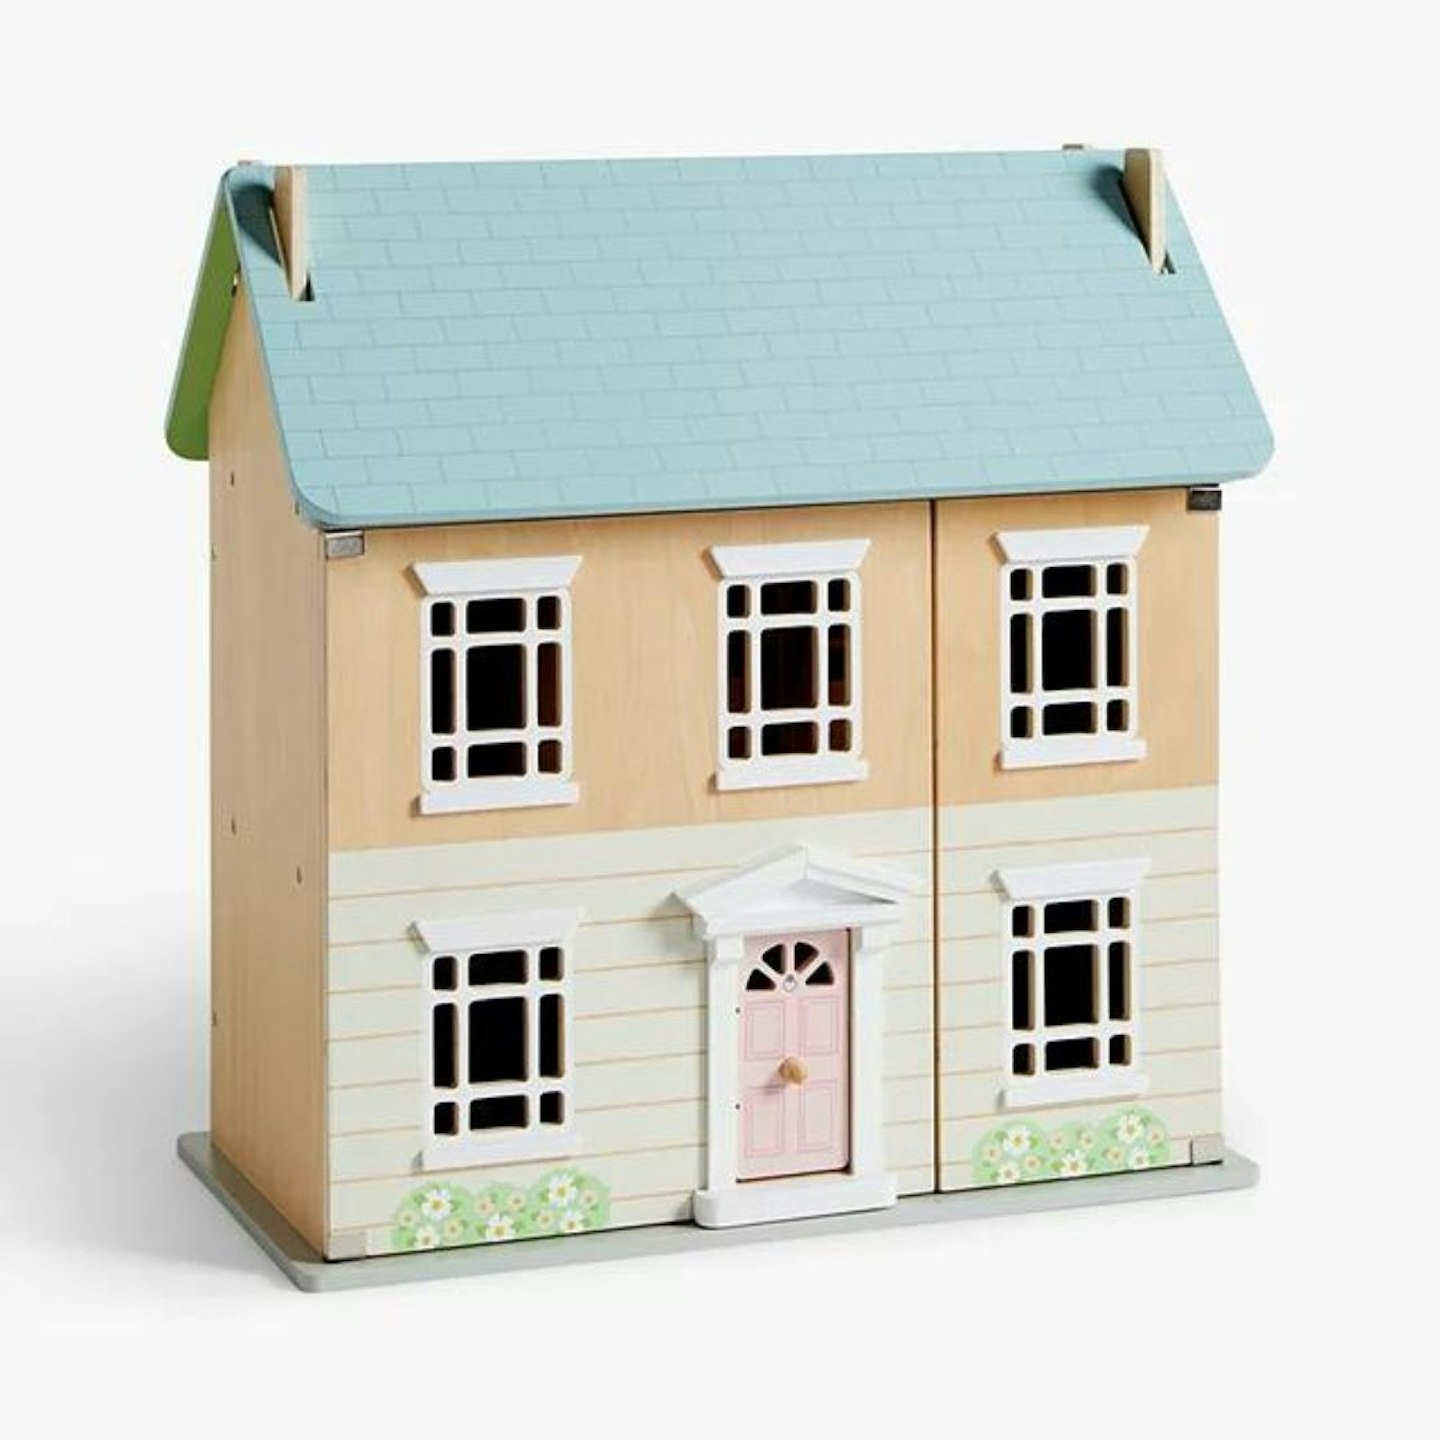 The Best Wooden Children's Toys: John Lewis Odney Wooden Doll's House